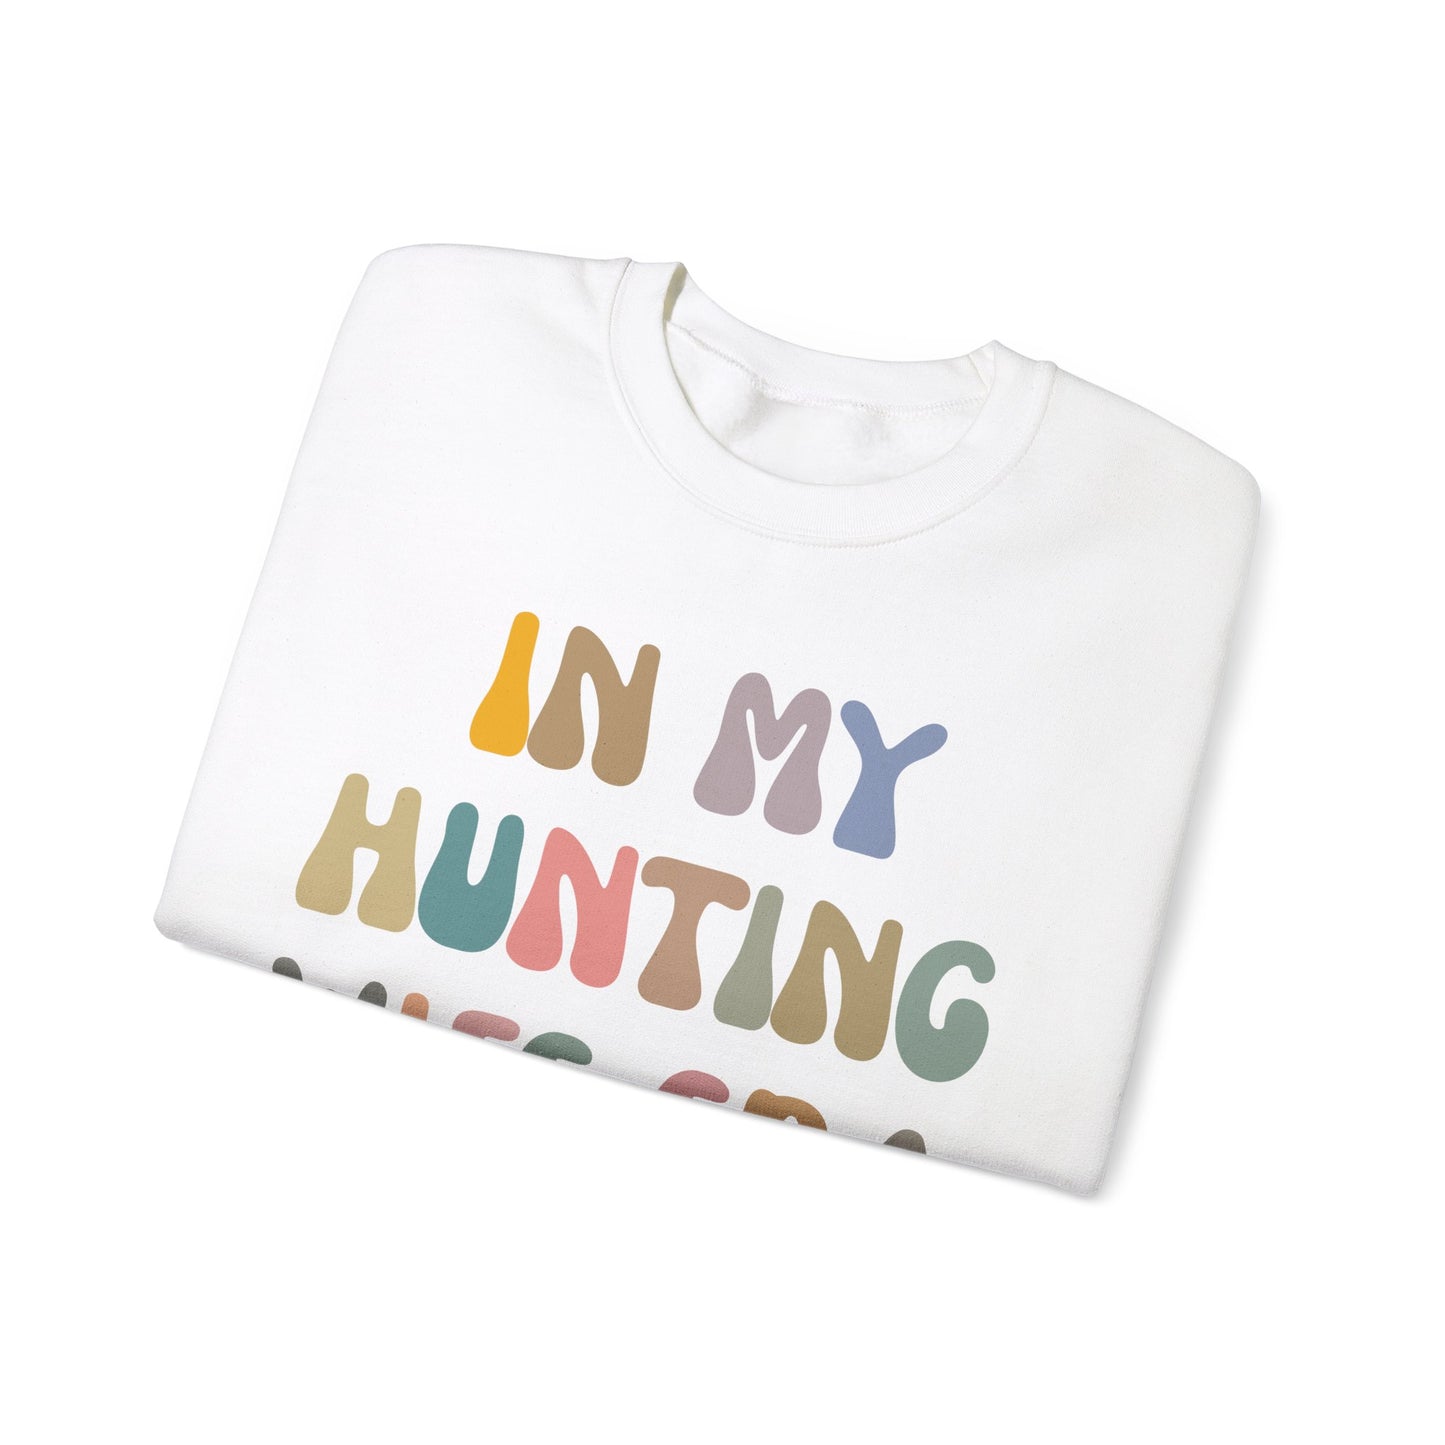 In My Hunting Wife Era Sweatshirt, Hunter Wife Sweatshirt, Gift for Wife from Husband, Hunting Wife Sweatshirt, Hunting Season Shirt, S1317